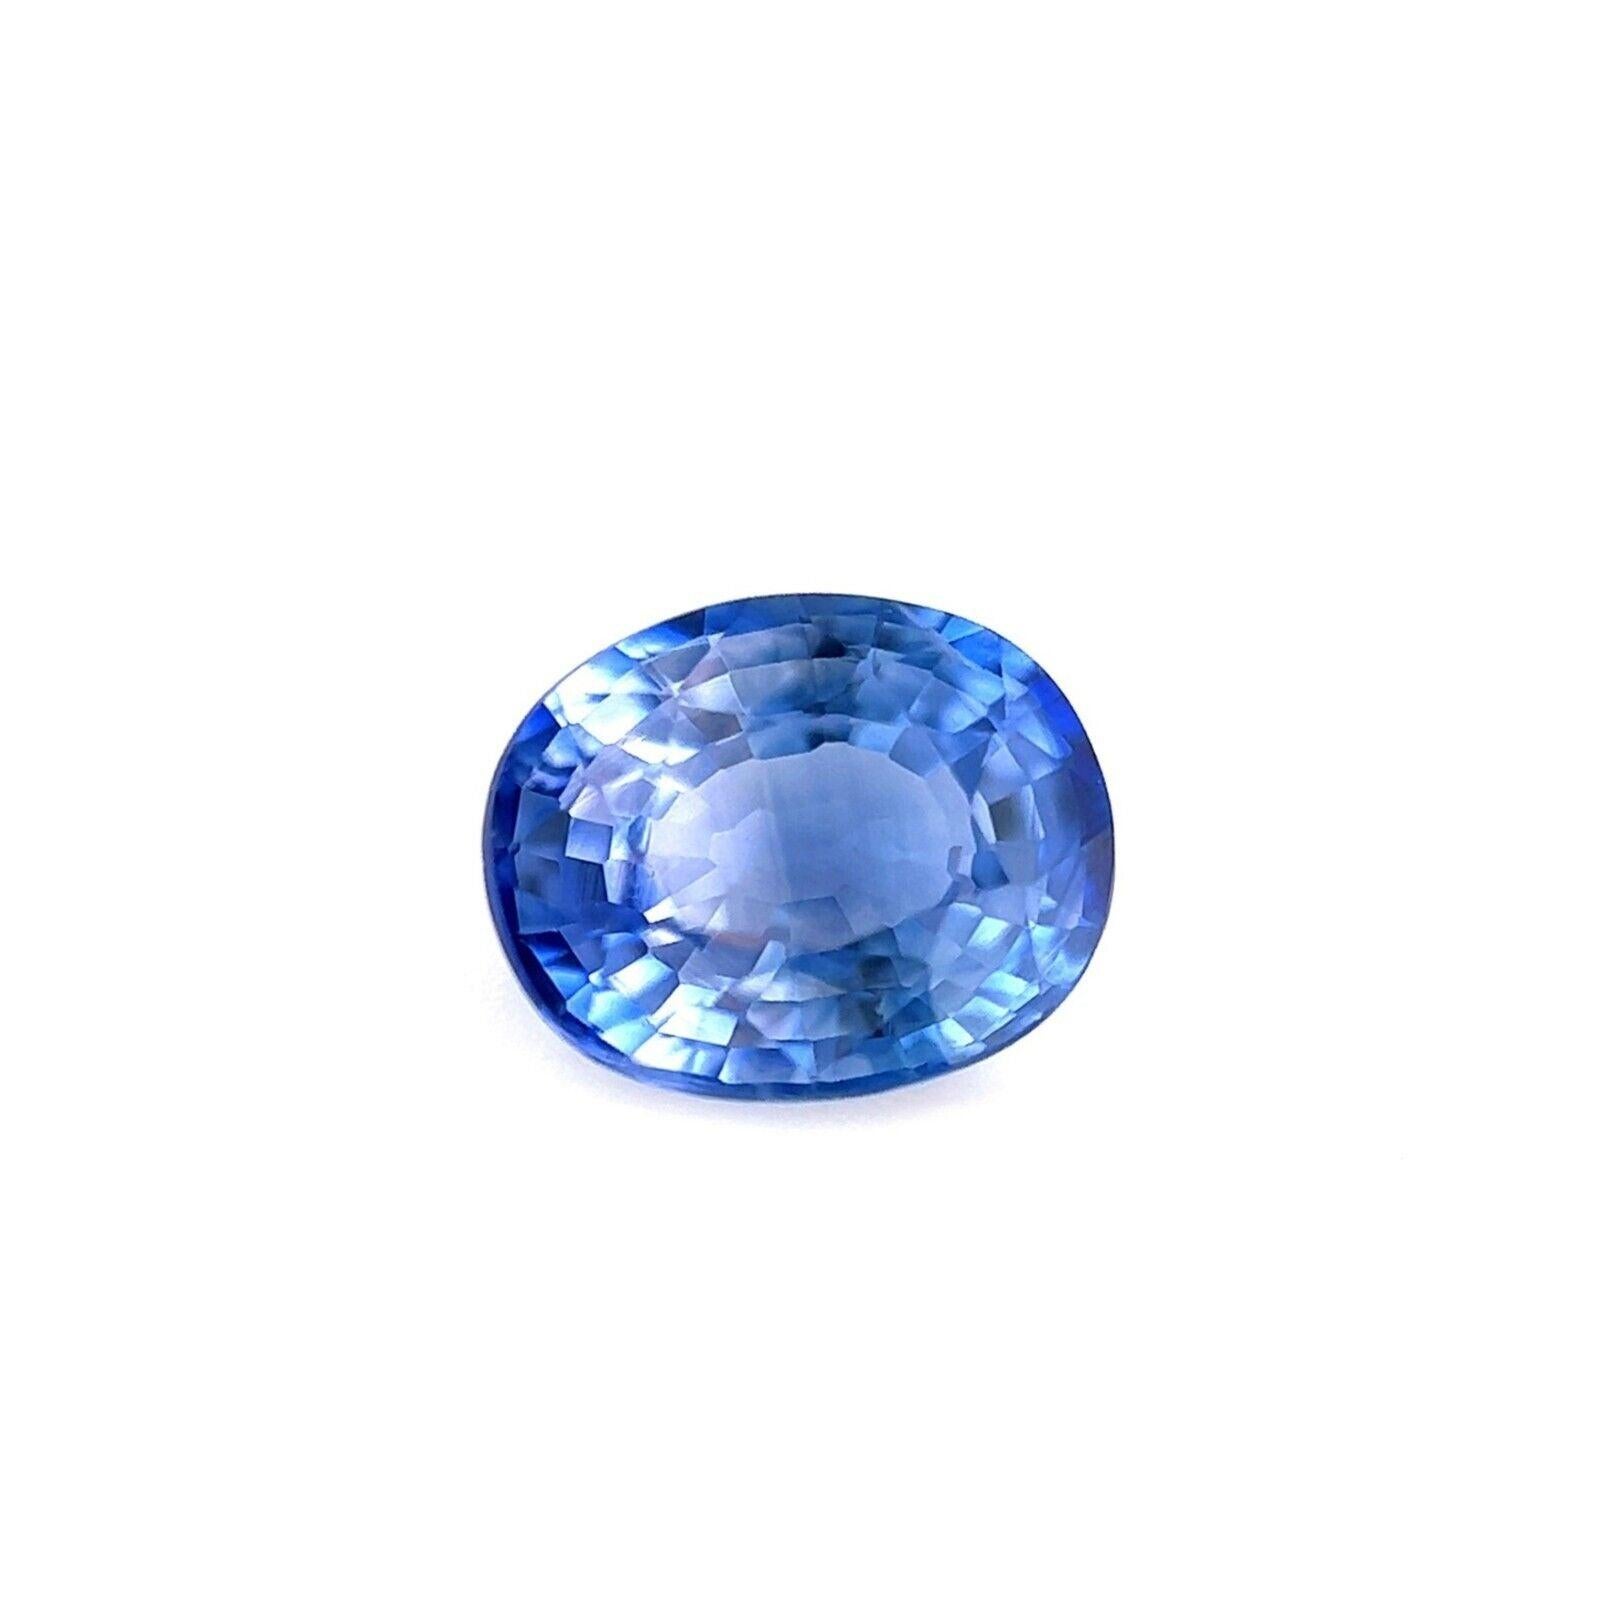 1.13ct Unique Fine Ceylon Blue Violet Sapphire Oval Cut Blue Rare 6.6x5.3mm VS

Saphir bleu violet de Ceylan unique en son genre.
Saphir de 1,13 carat d'une rare couleur bleu violet vif. Elle présente également une très bonne clarté, une pierre très